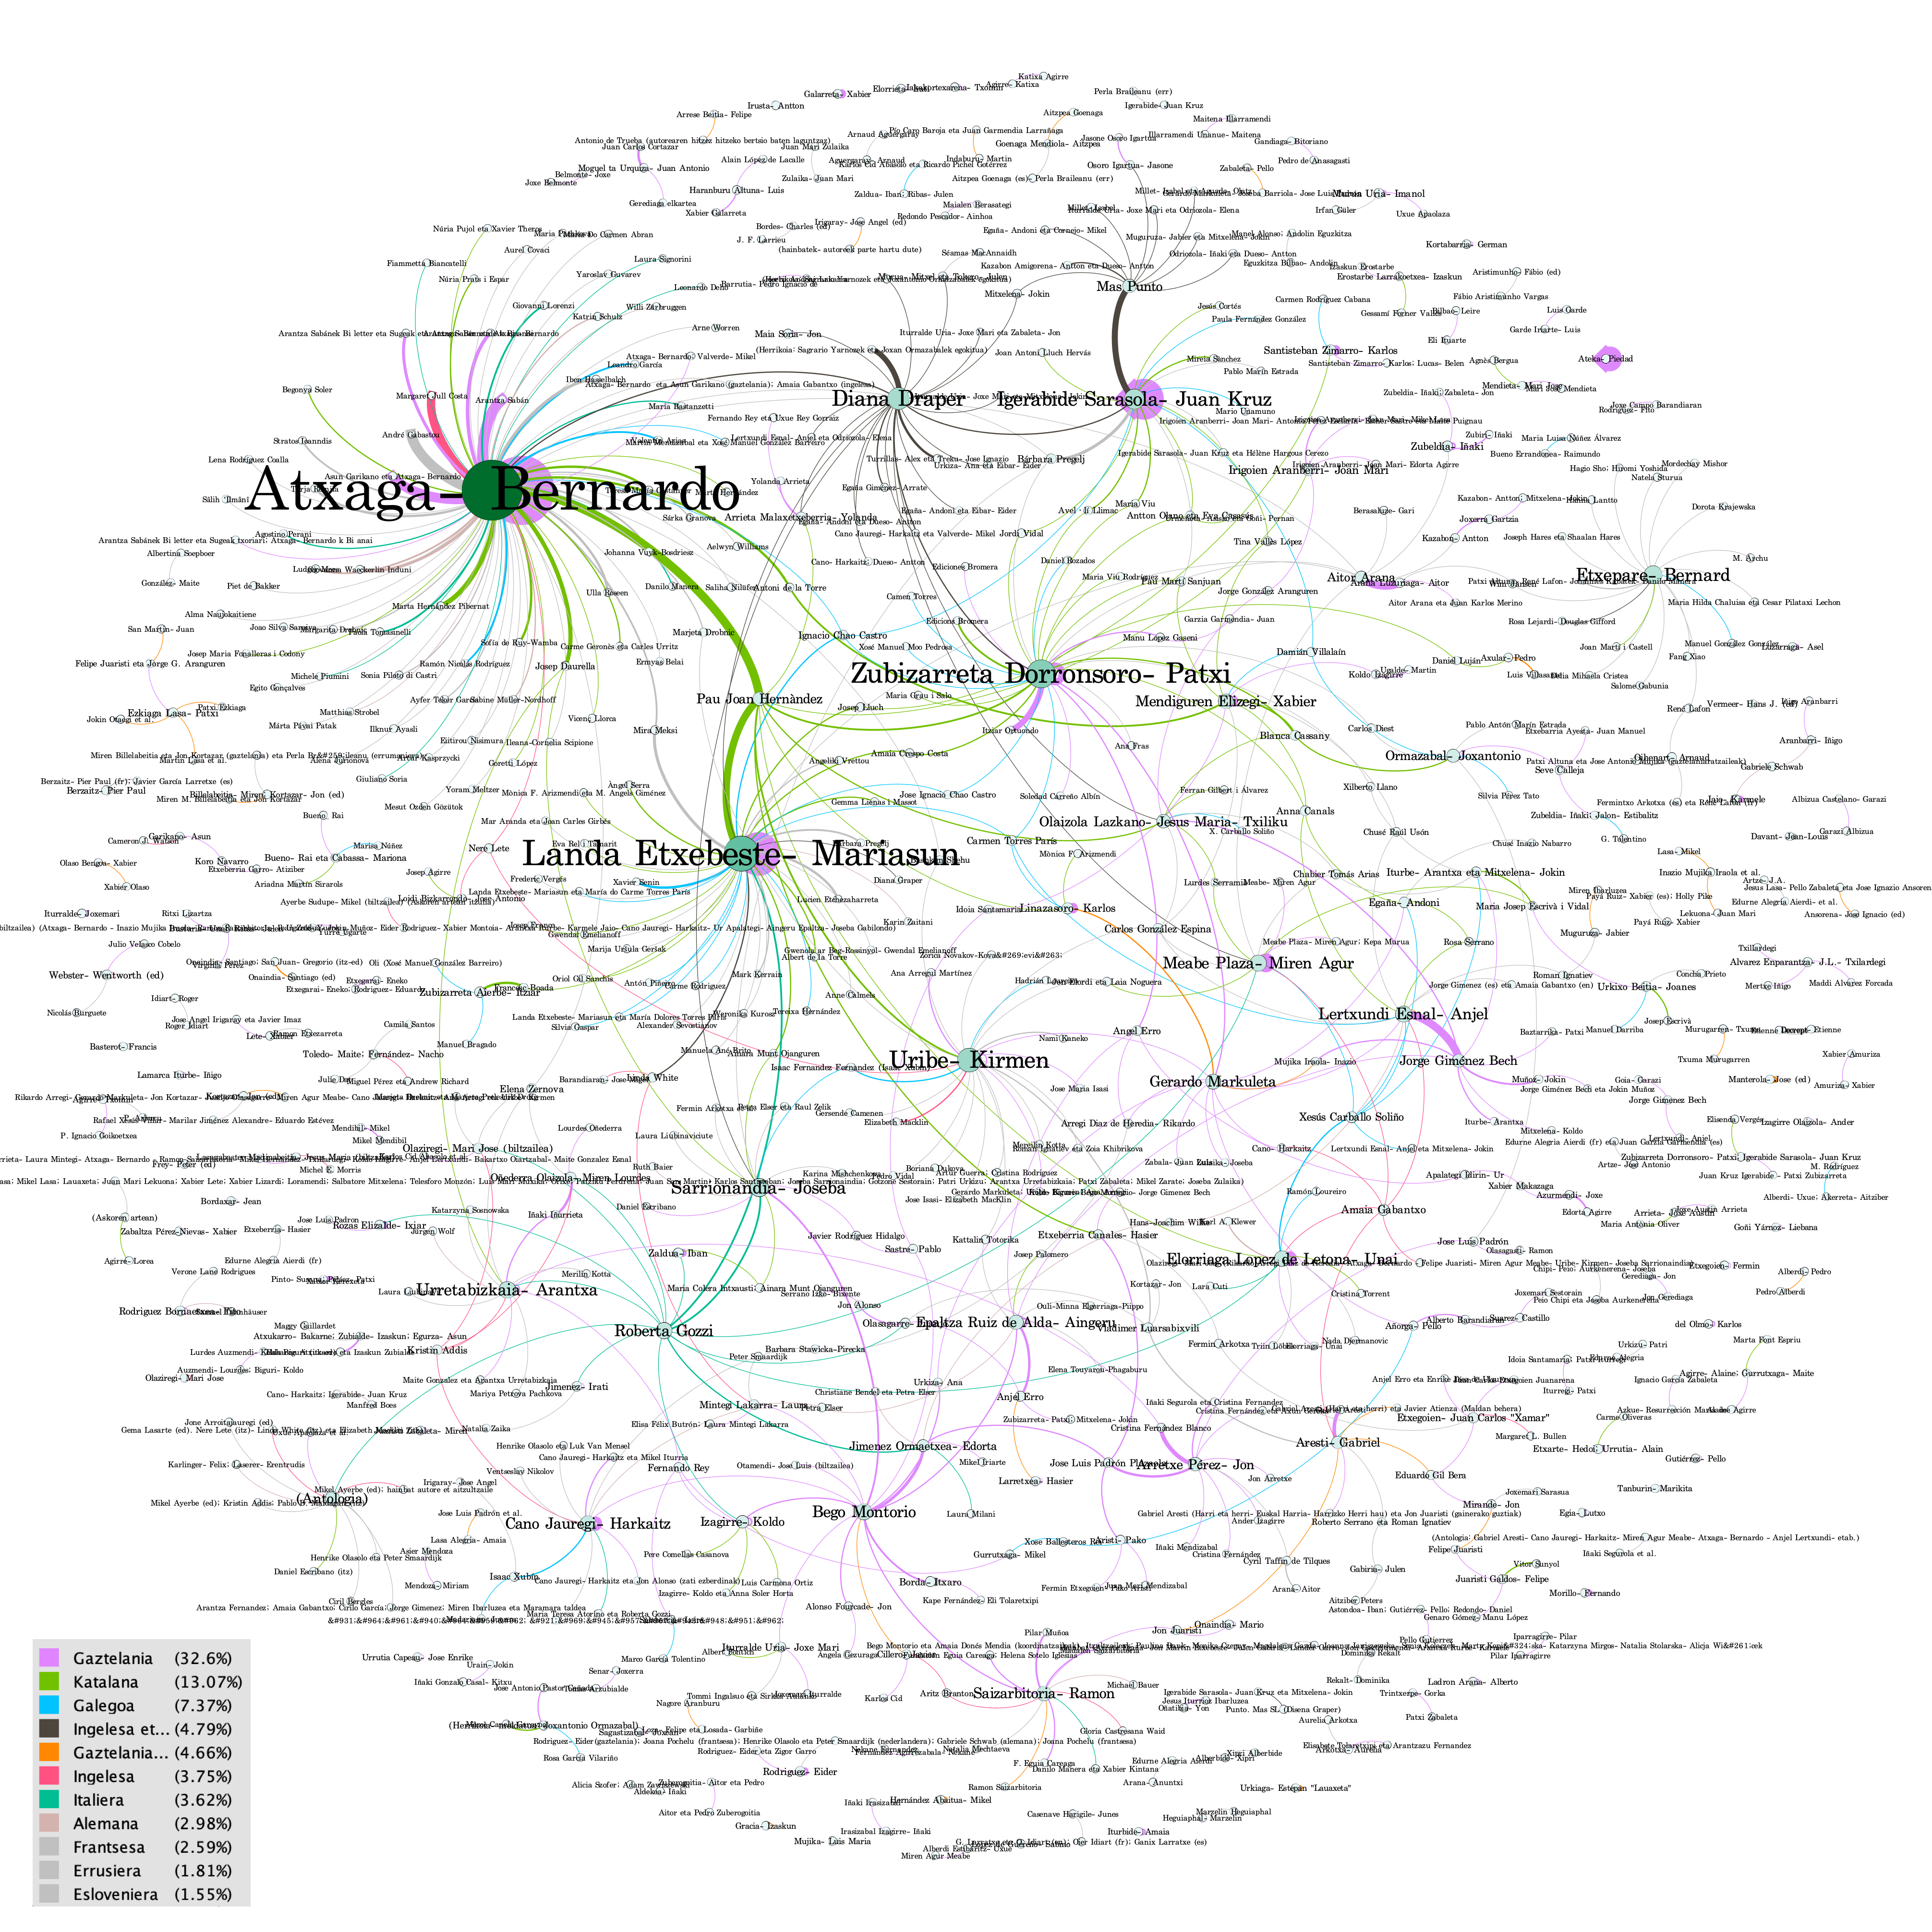 Visualización de la red de autores y traductores